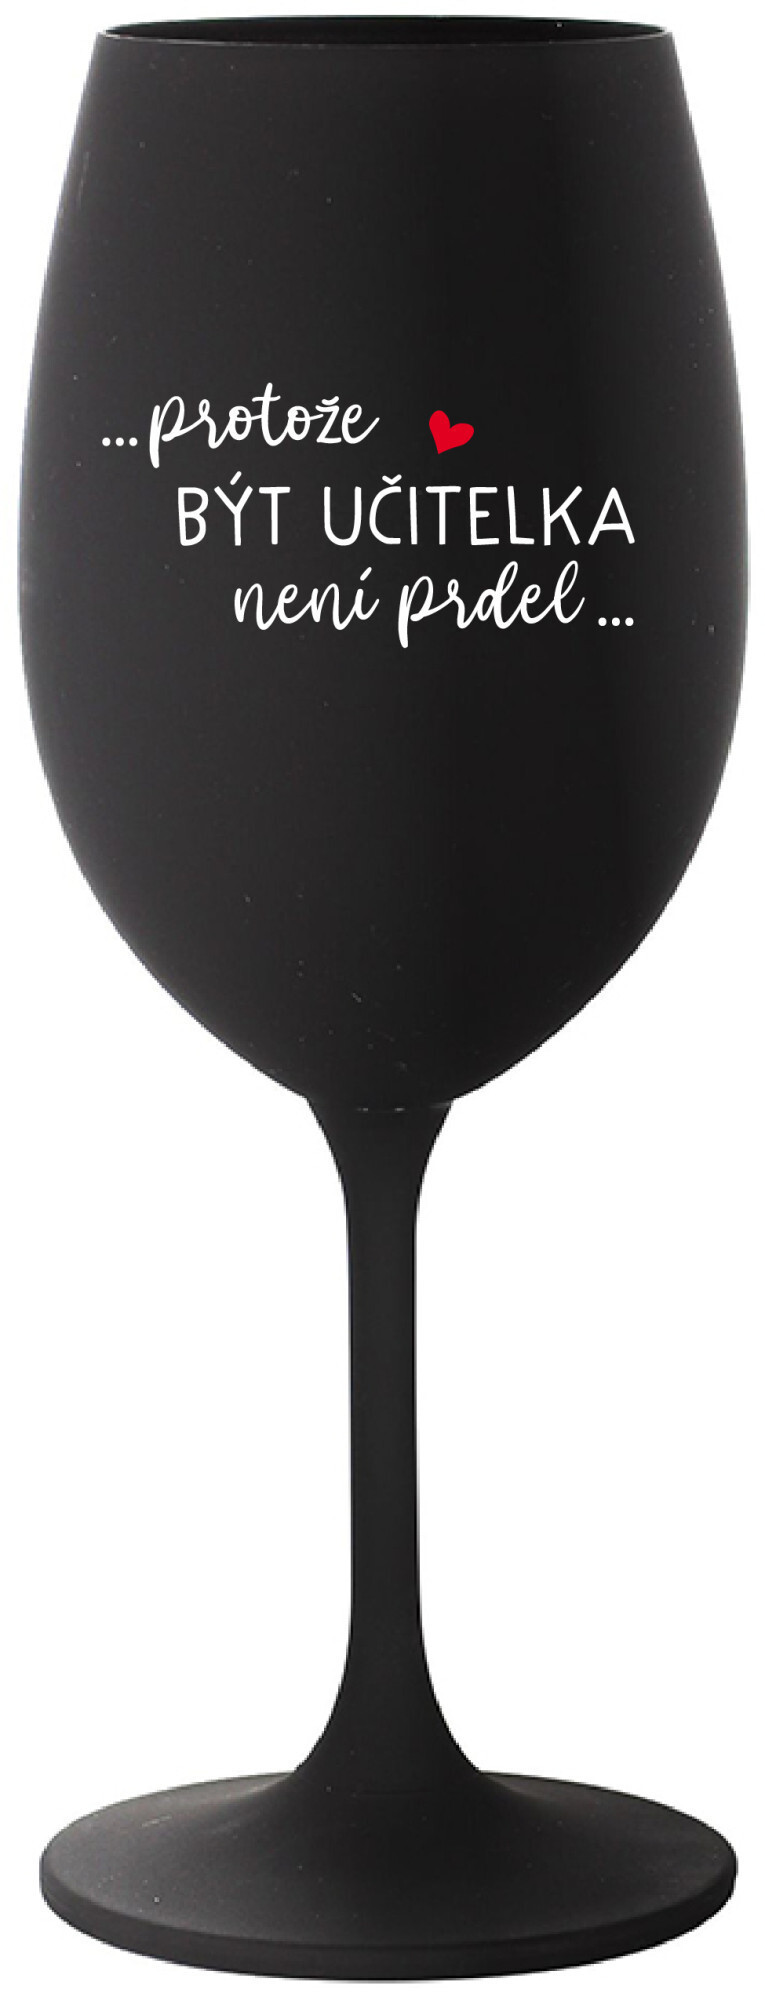 PROTOŽE BÝT UČITELKOU NENÍ PRDEL - černá sklenice na víno 350 ml